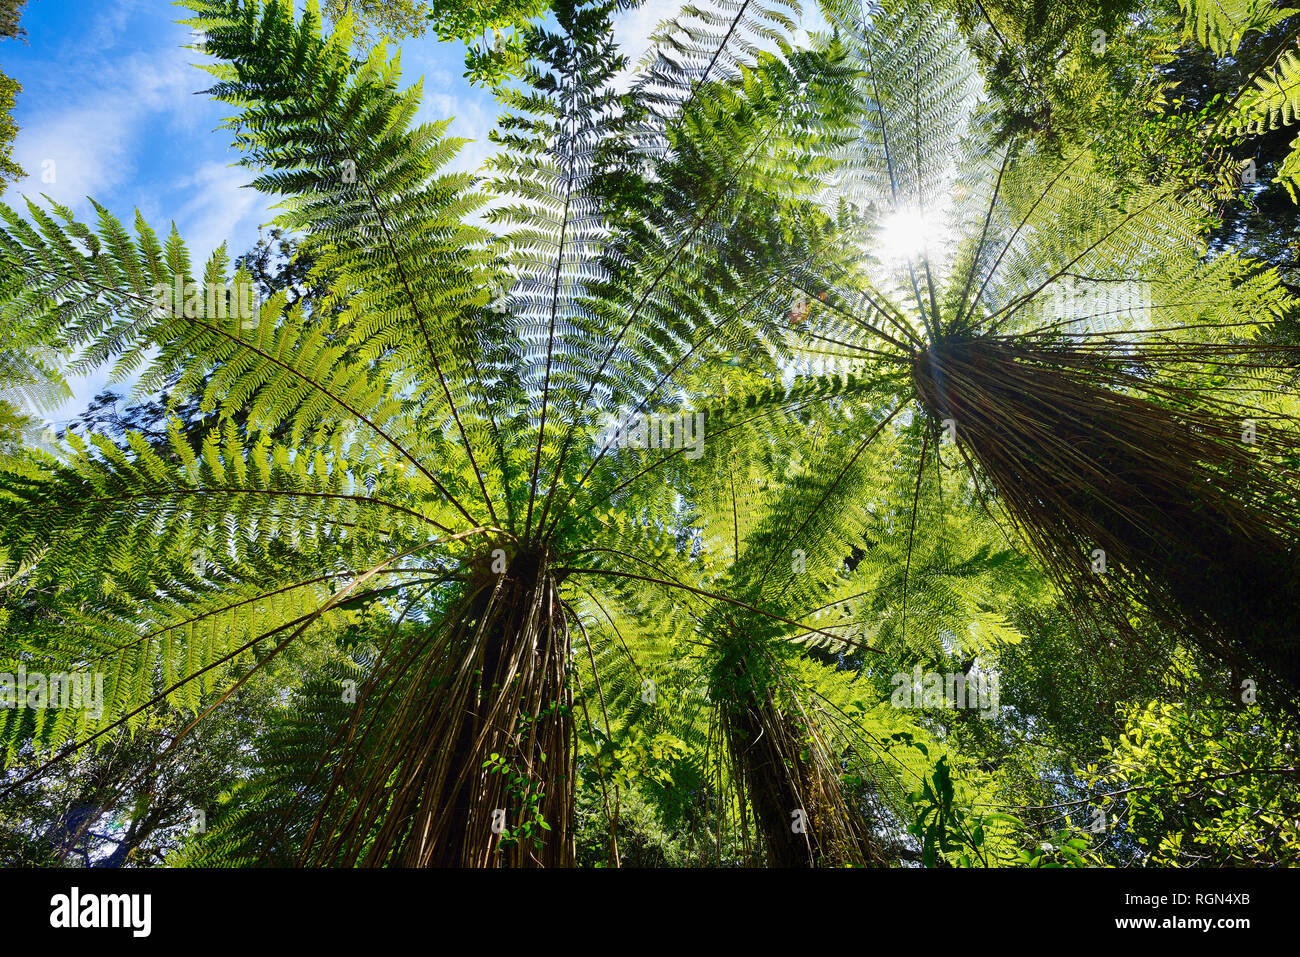 Felci arboree nella foresta pluviale temperata, nella costa occidentale dell'Isola del Sud della Nuova Zelanda, Nuova Zelanda Foto Stock